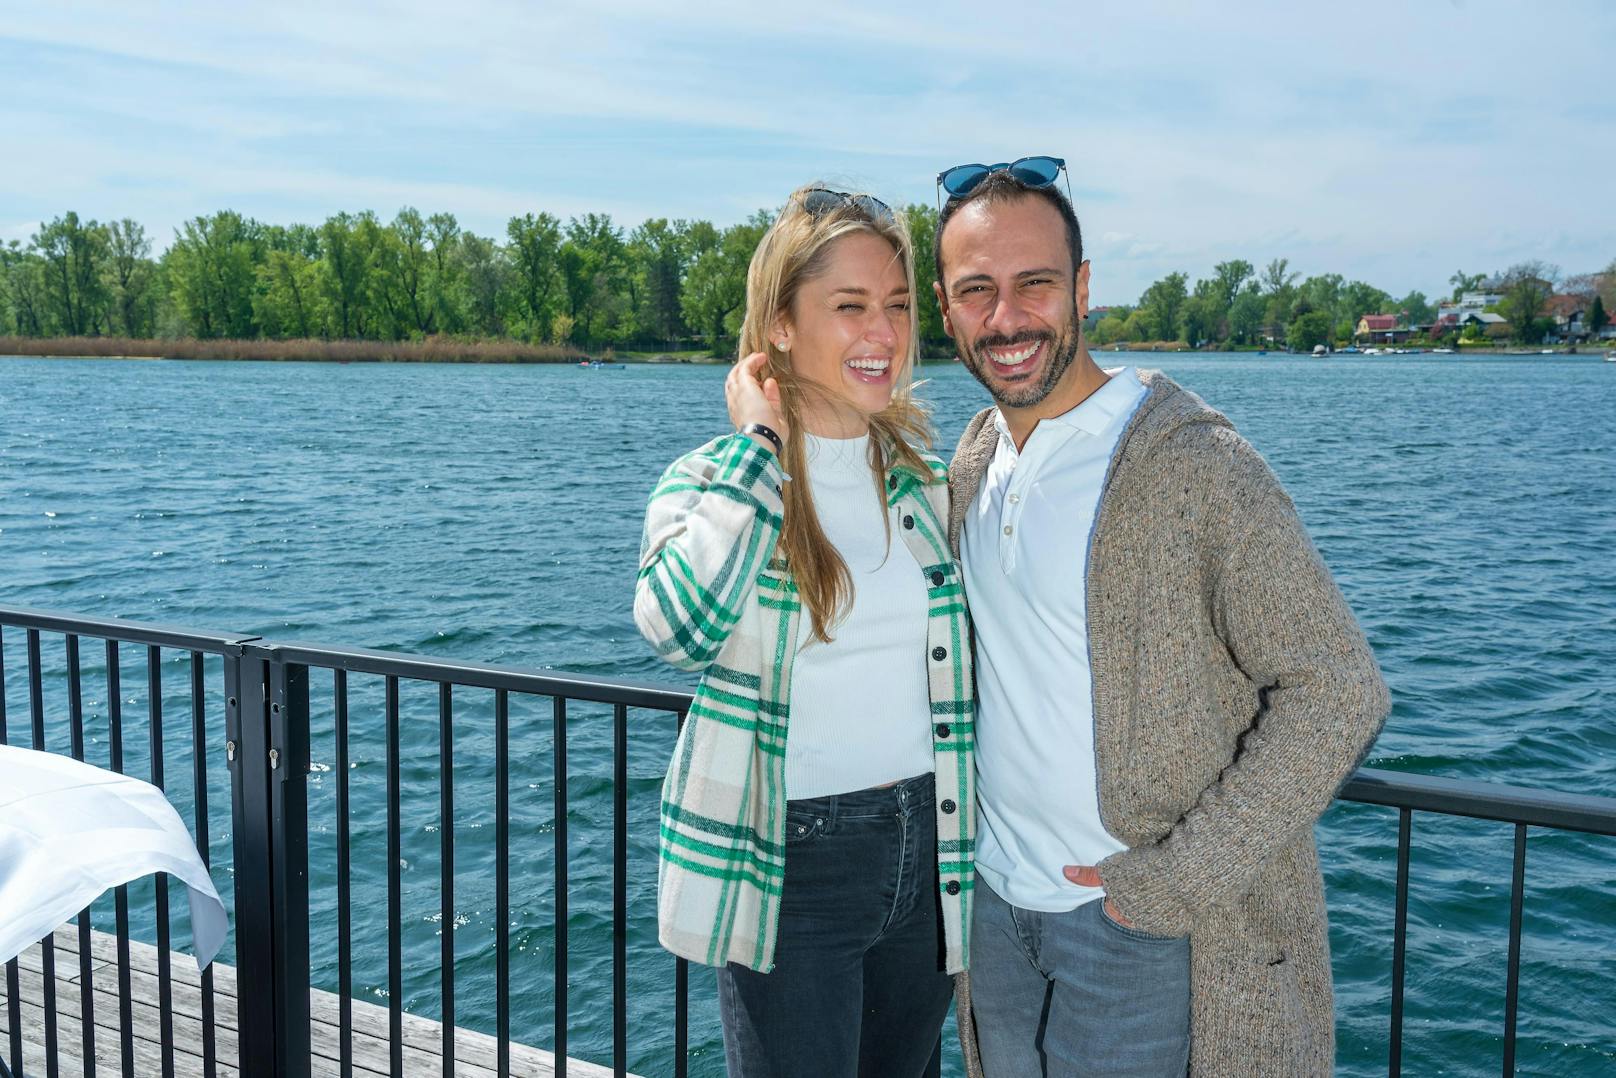 "Es war ja eigentlich kein so großes Geheimnis", lacht Rennfahrerin Corinna Kamper (29) über die nun auch offizielle Beziehung zu ihrem ehemaligen "Dancing Stars"- Partner Danilo Campisi (35).
